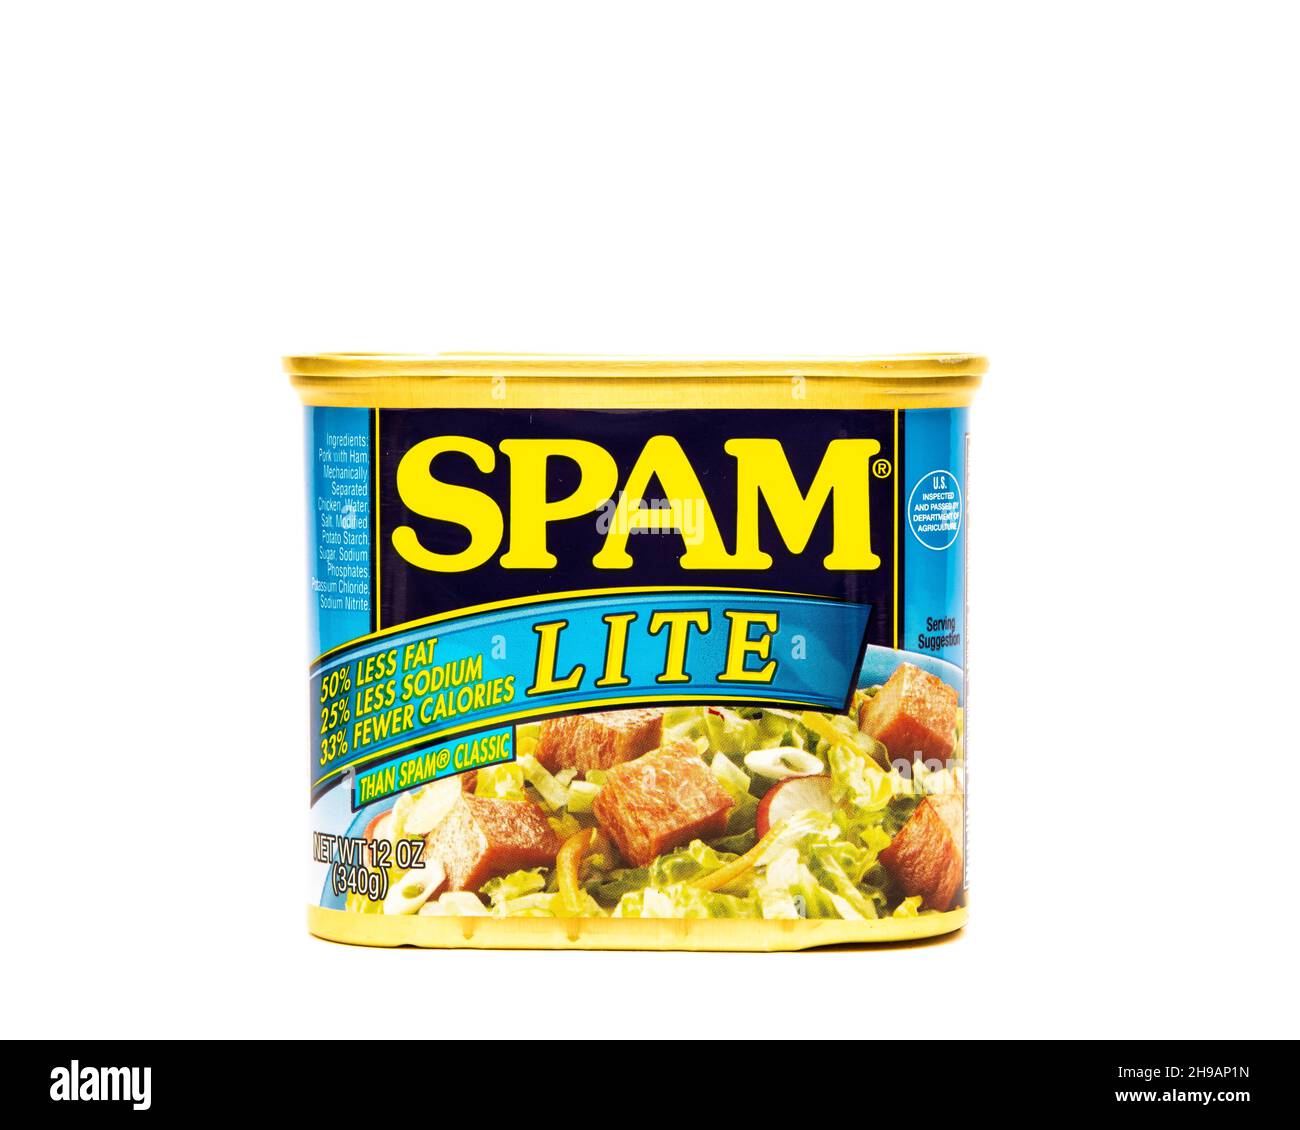 Image d'une boîte de Hormel Spam Lite, porc entièrement cuit avec moins de gras, de sodium et de calories isolées sur blanc Banque D'Images